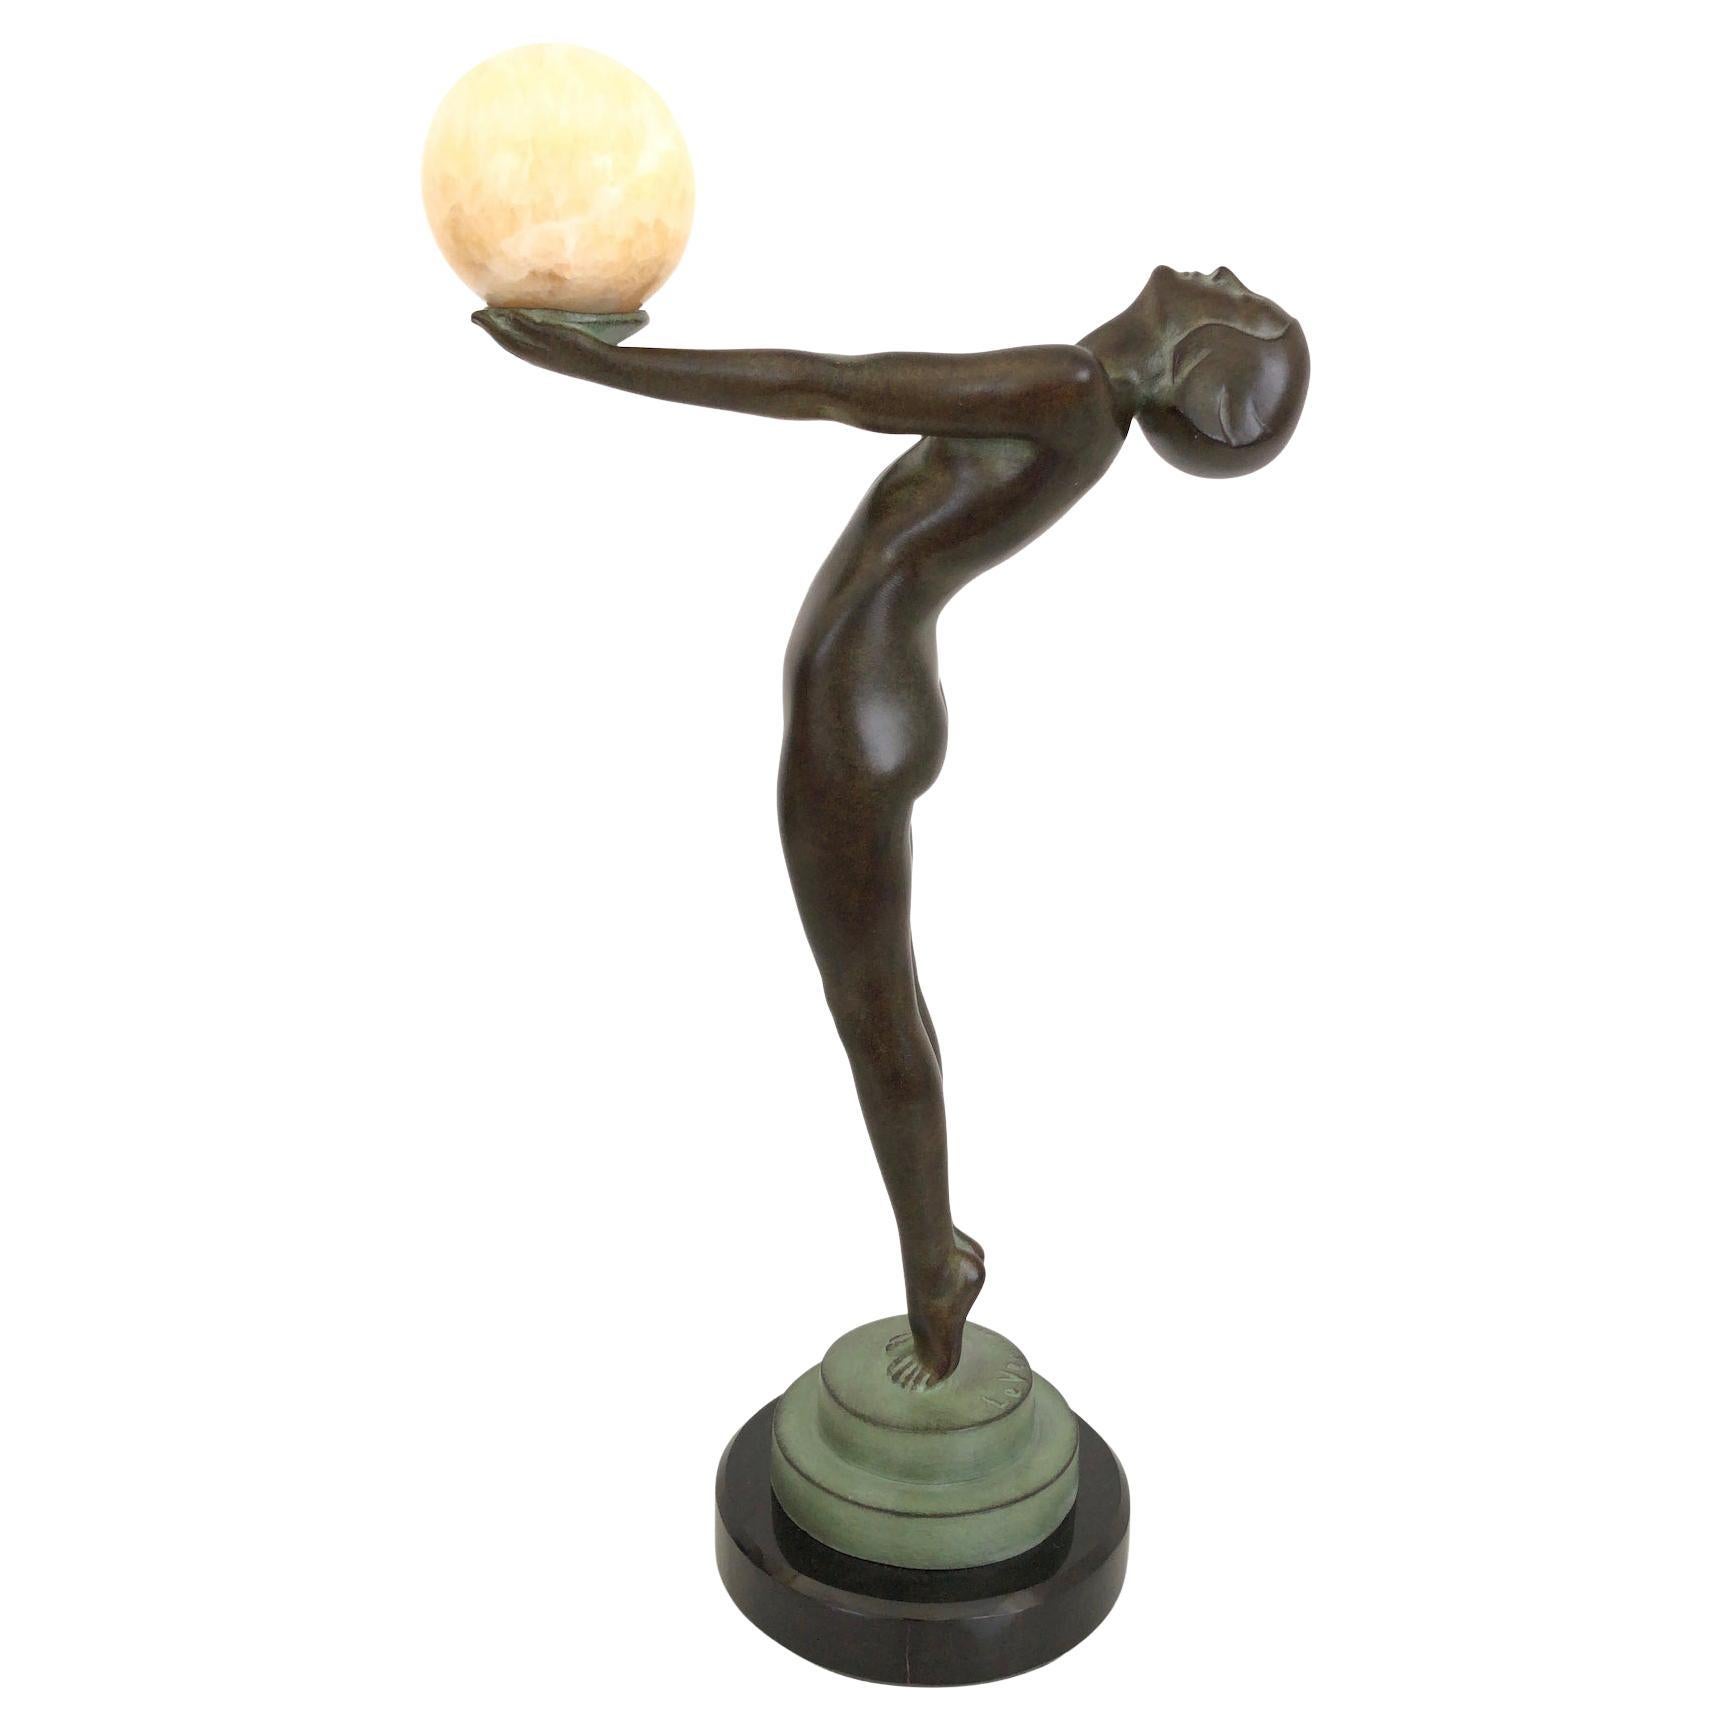 Art Deco Style Dancer Sculpture Clarté with Onyx Ball Original Max Le Verrier